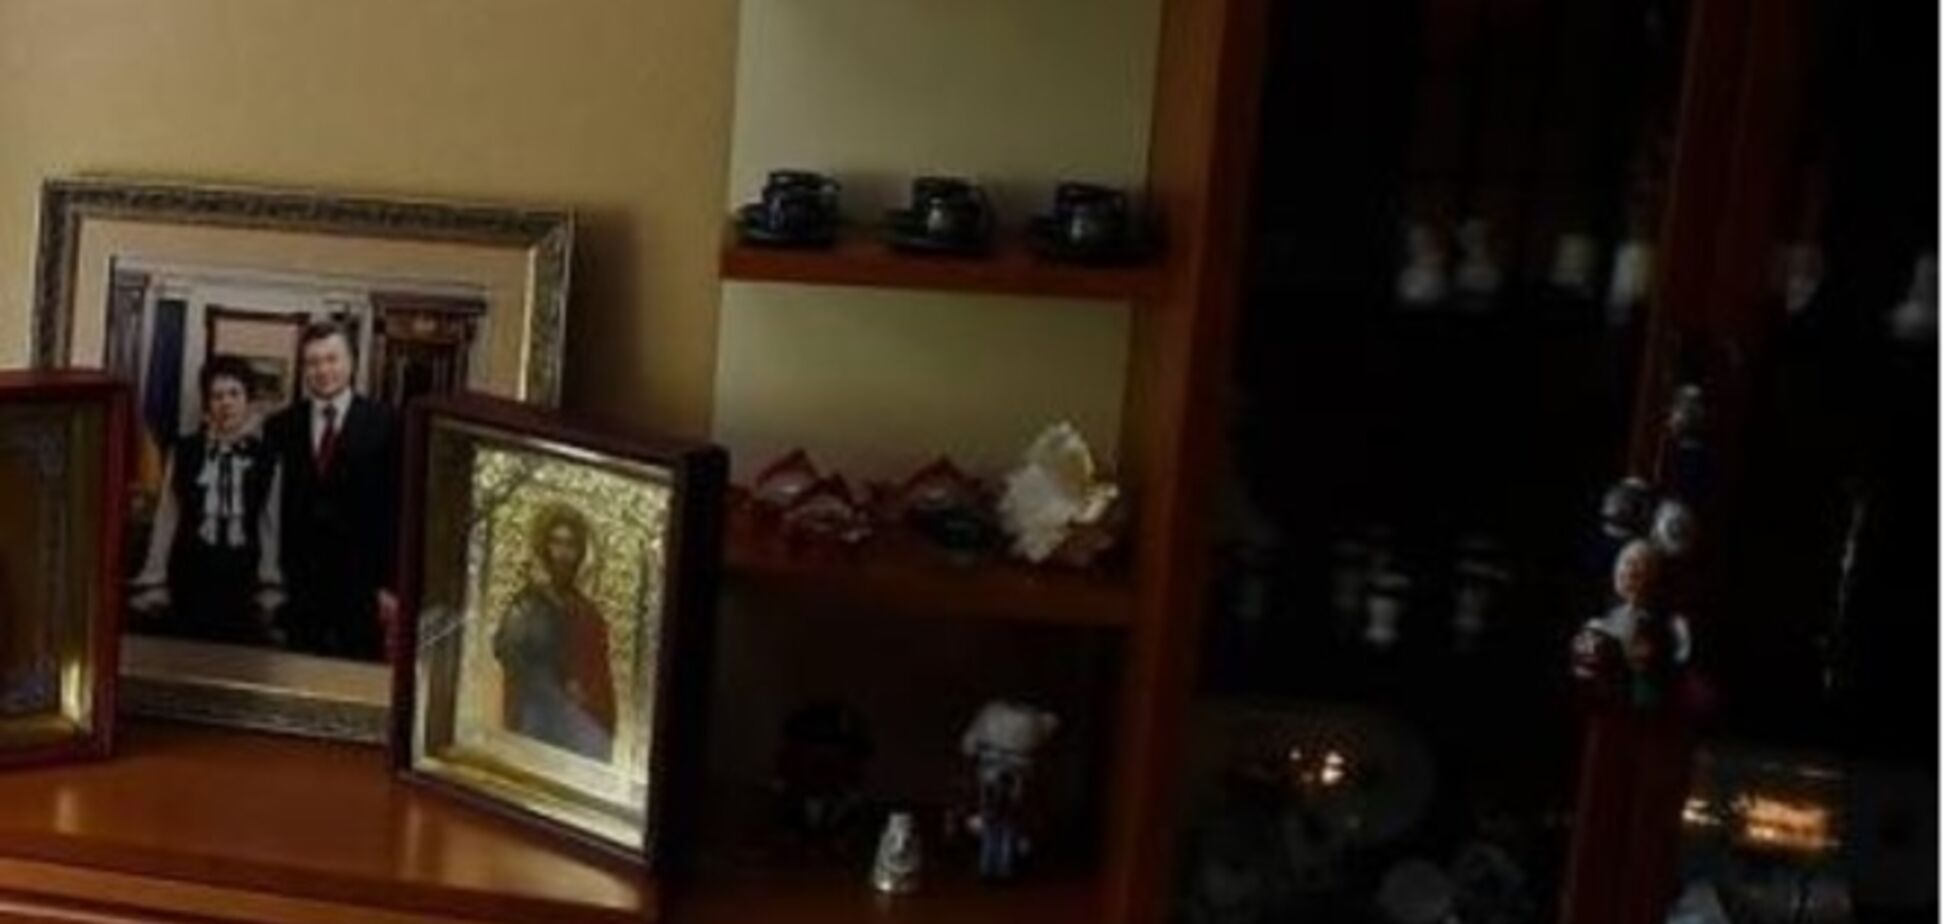 На ликвидированной базе боевиков обнаружены иконы и фото Януковича